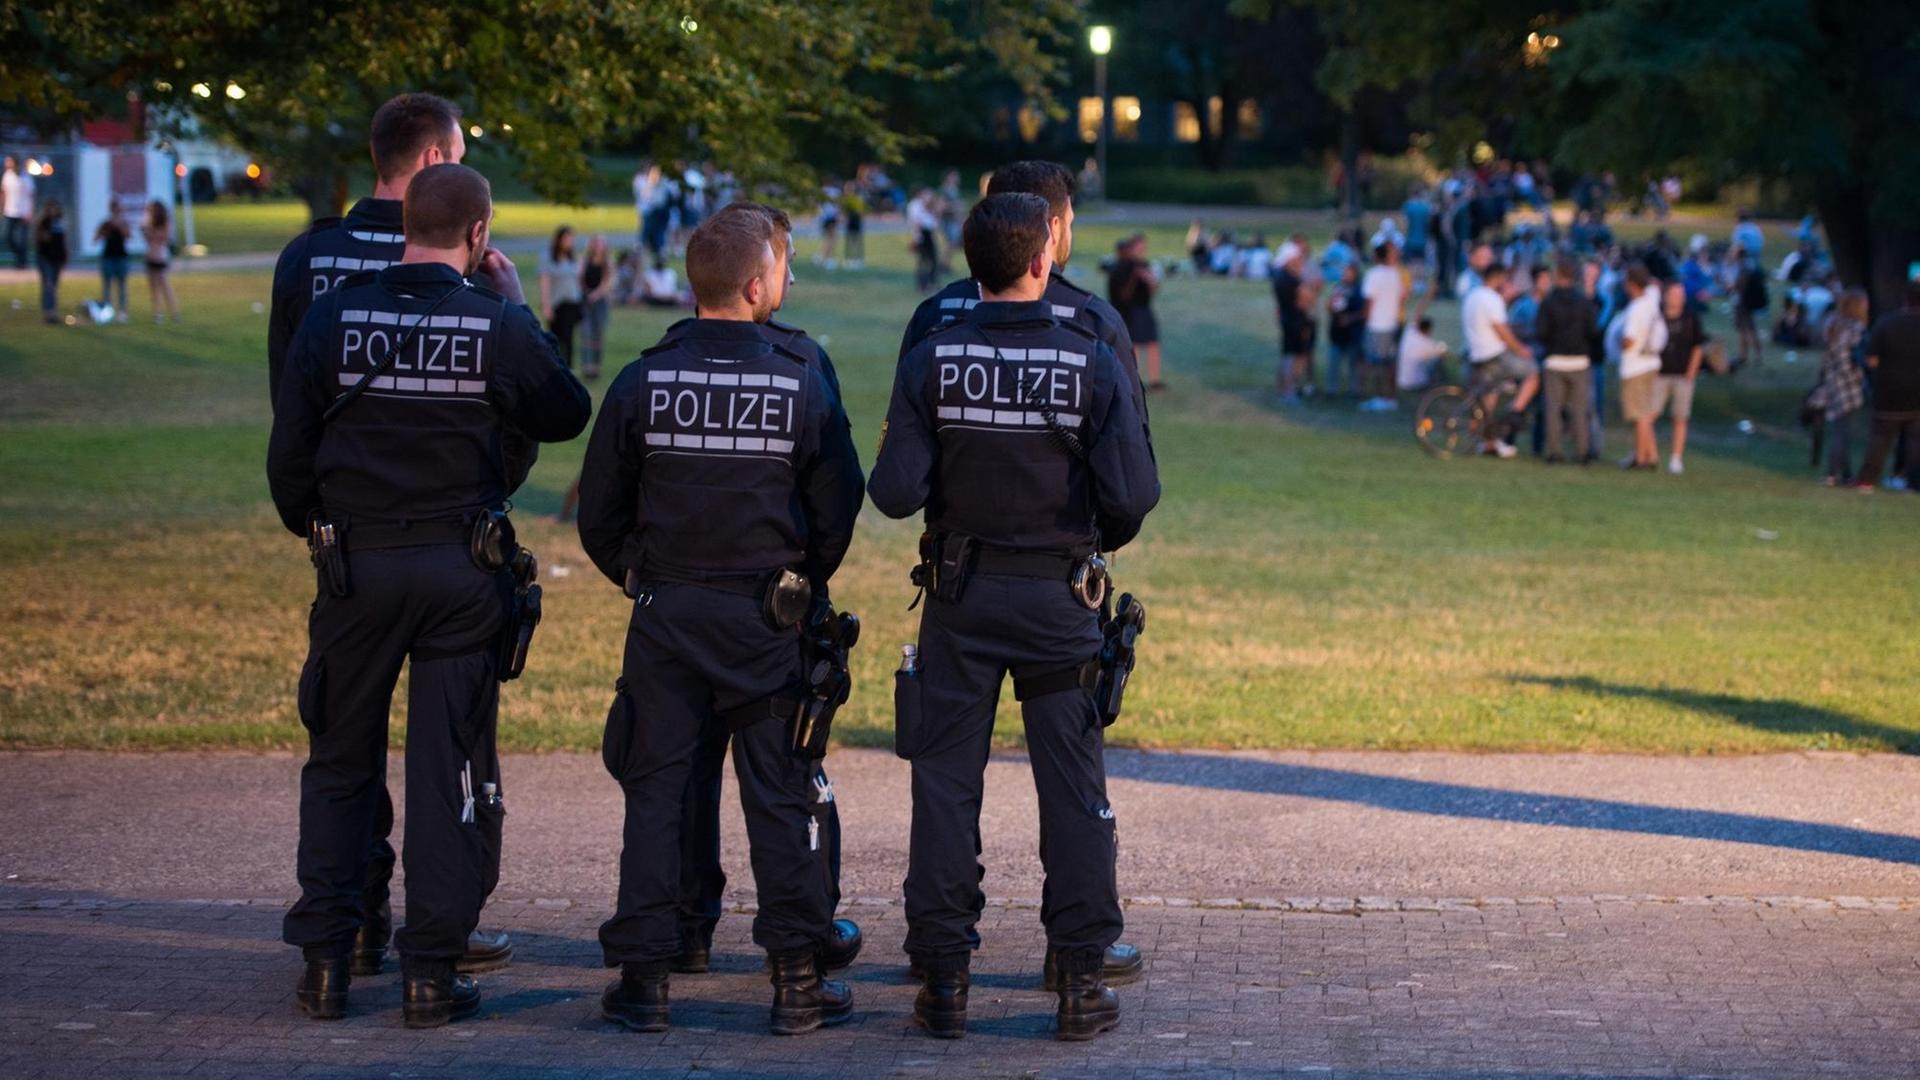 Die Polizei zeigt verstärkt Präsenz im Schlossgarten, in dem Jugendliche während eines Stadtfestes am 17.07.2017 in Schorndorf feiern.